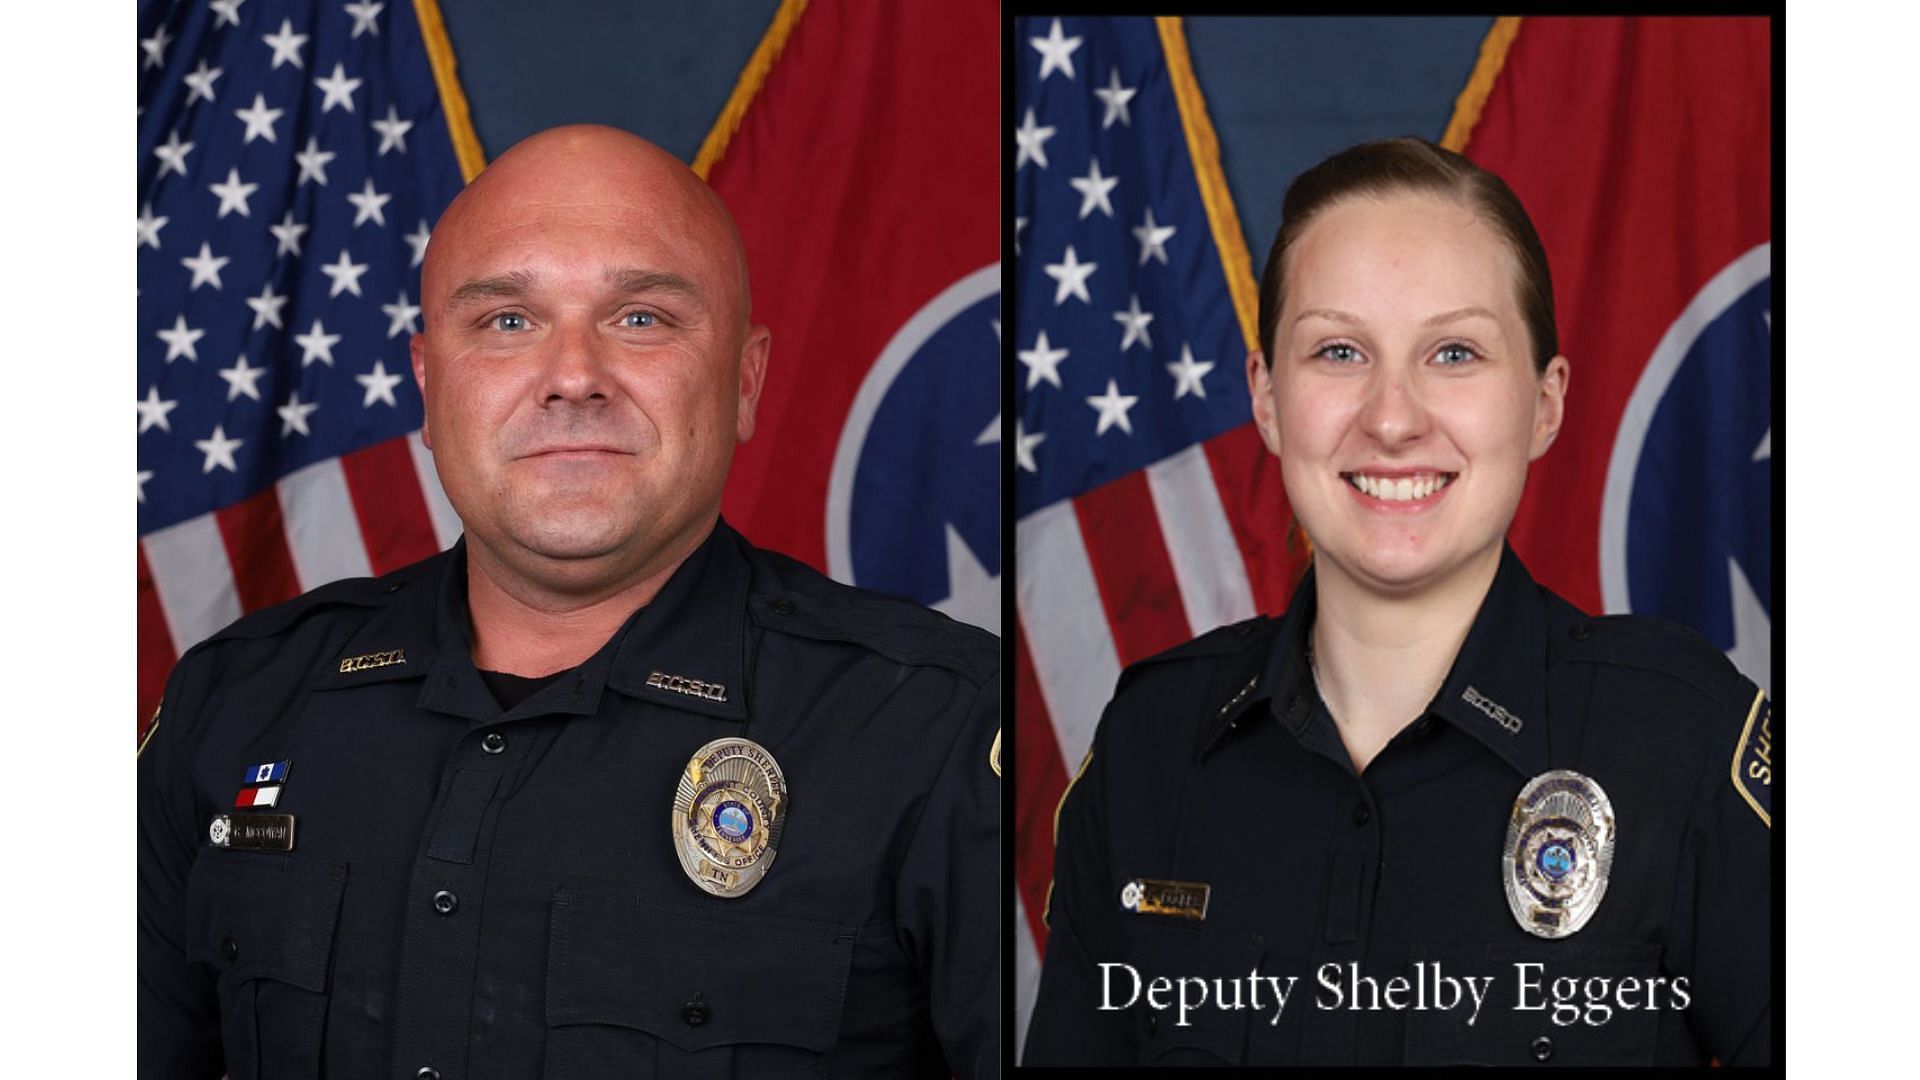 Deputy Greg McCowan and Deputy Shelby Eggers